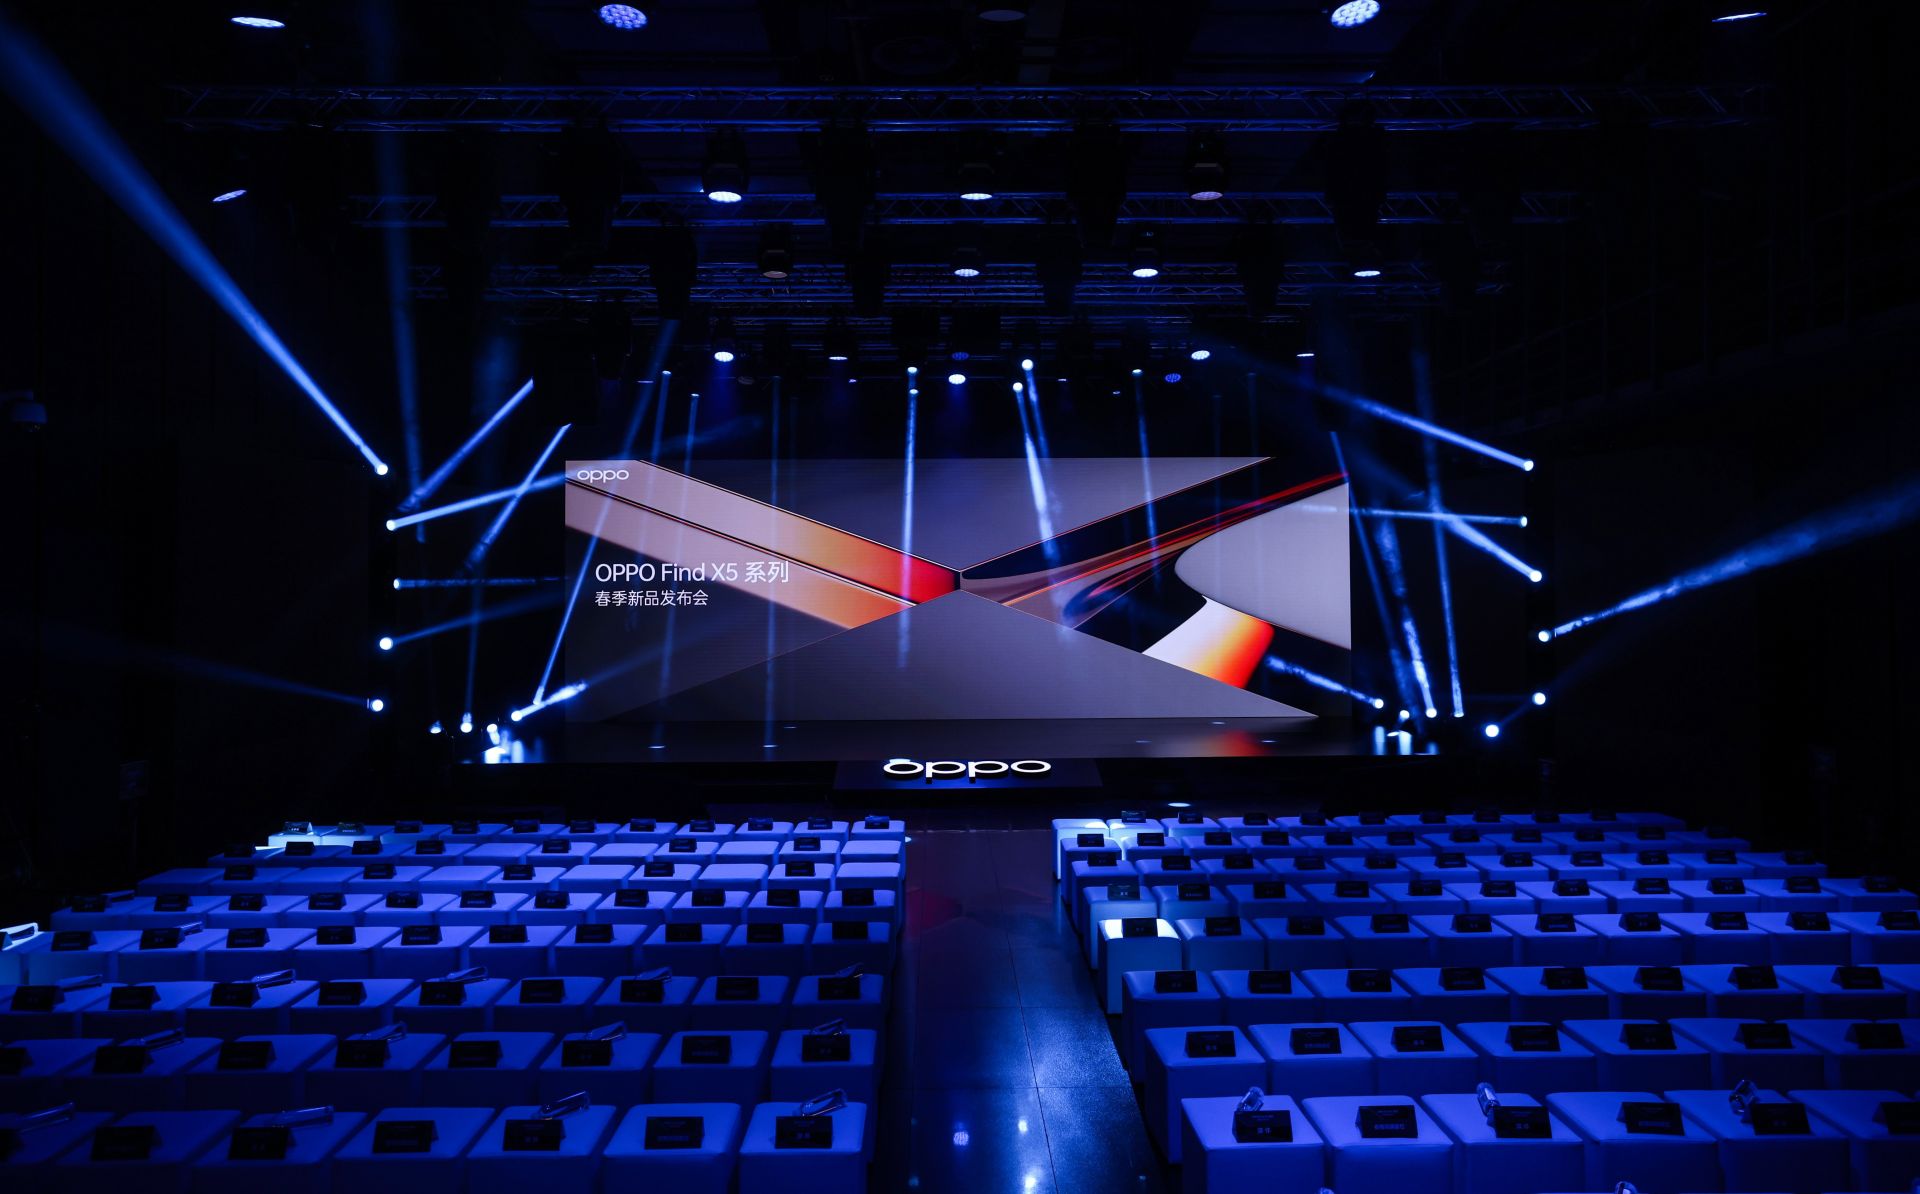 这是一场活动现场，有蓝色灯光、大屏幕显示OPPO标志，前方是整齐排列的空座位。氛围现代科技感十足。